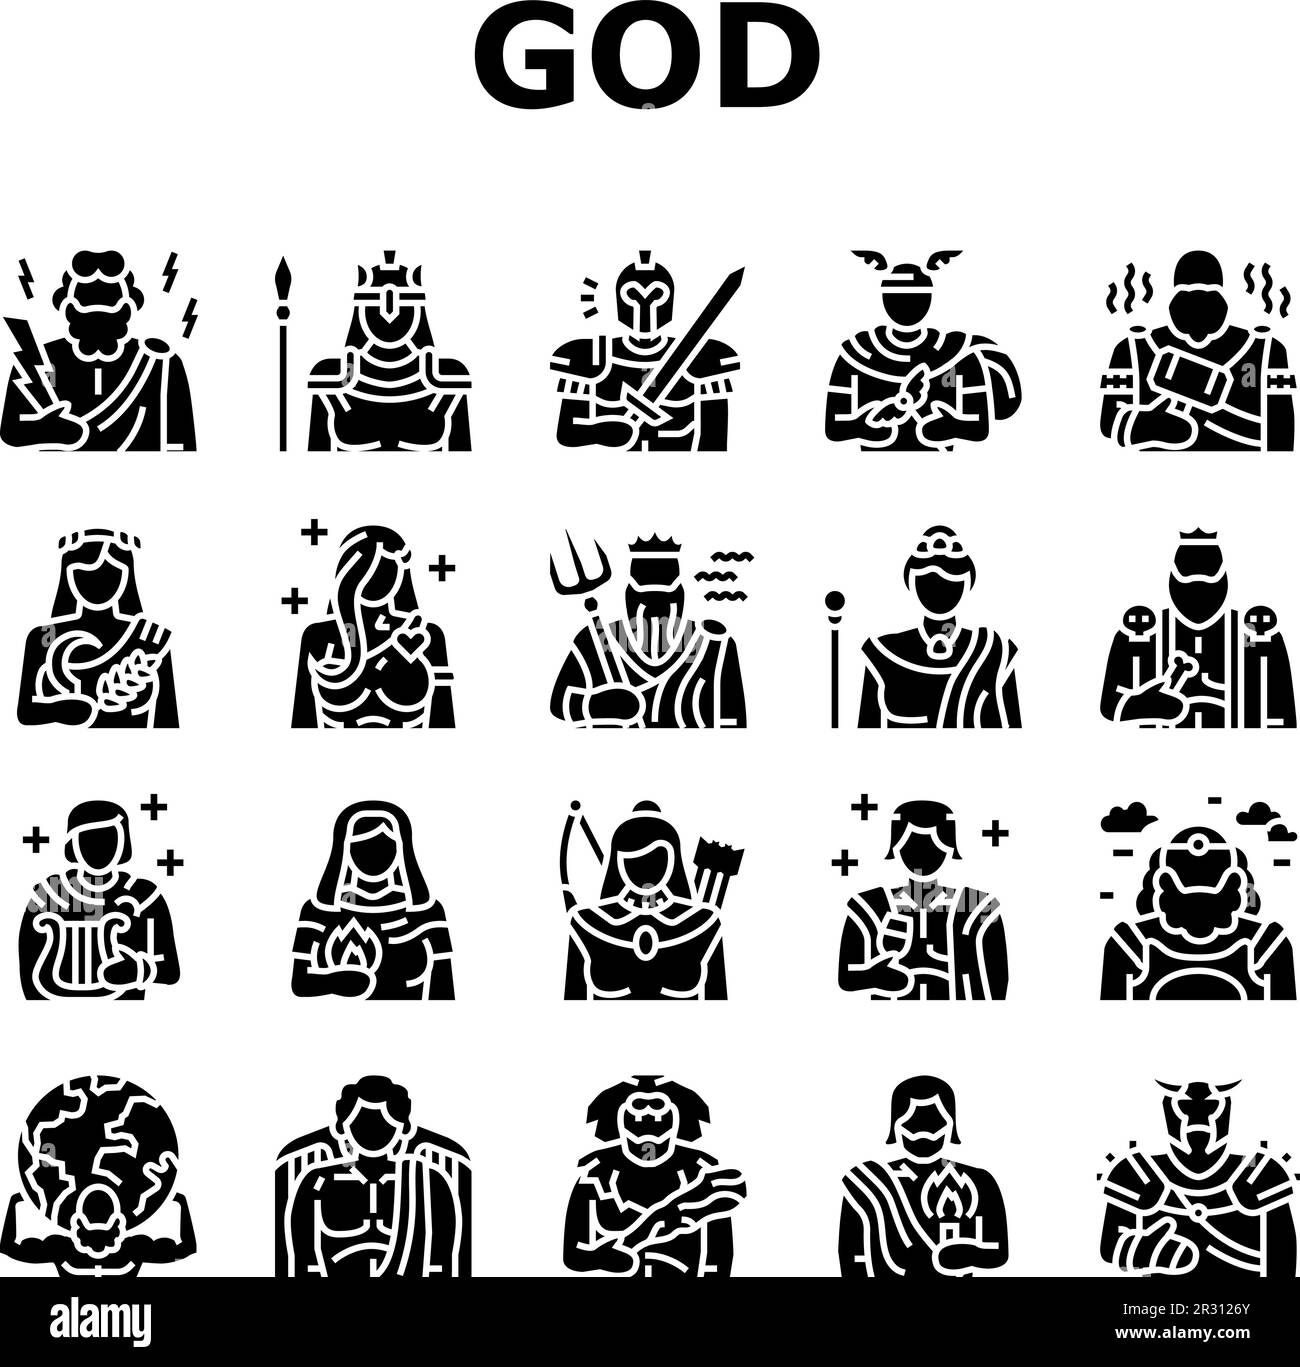 greek god mythology ancient icons set vector Stock Vector